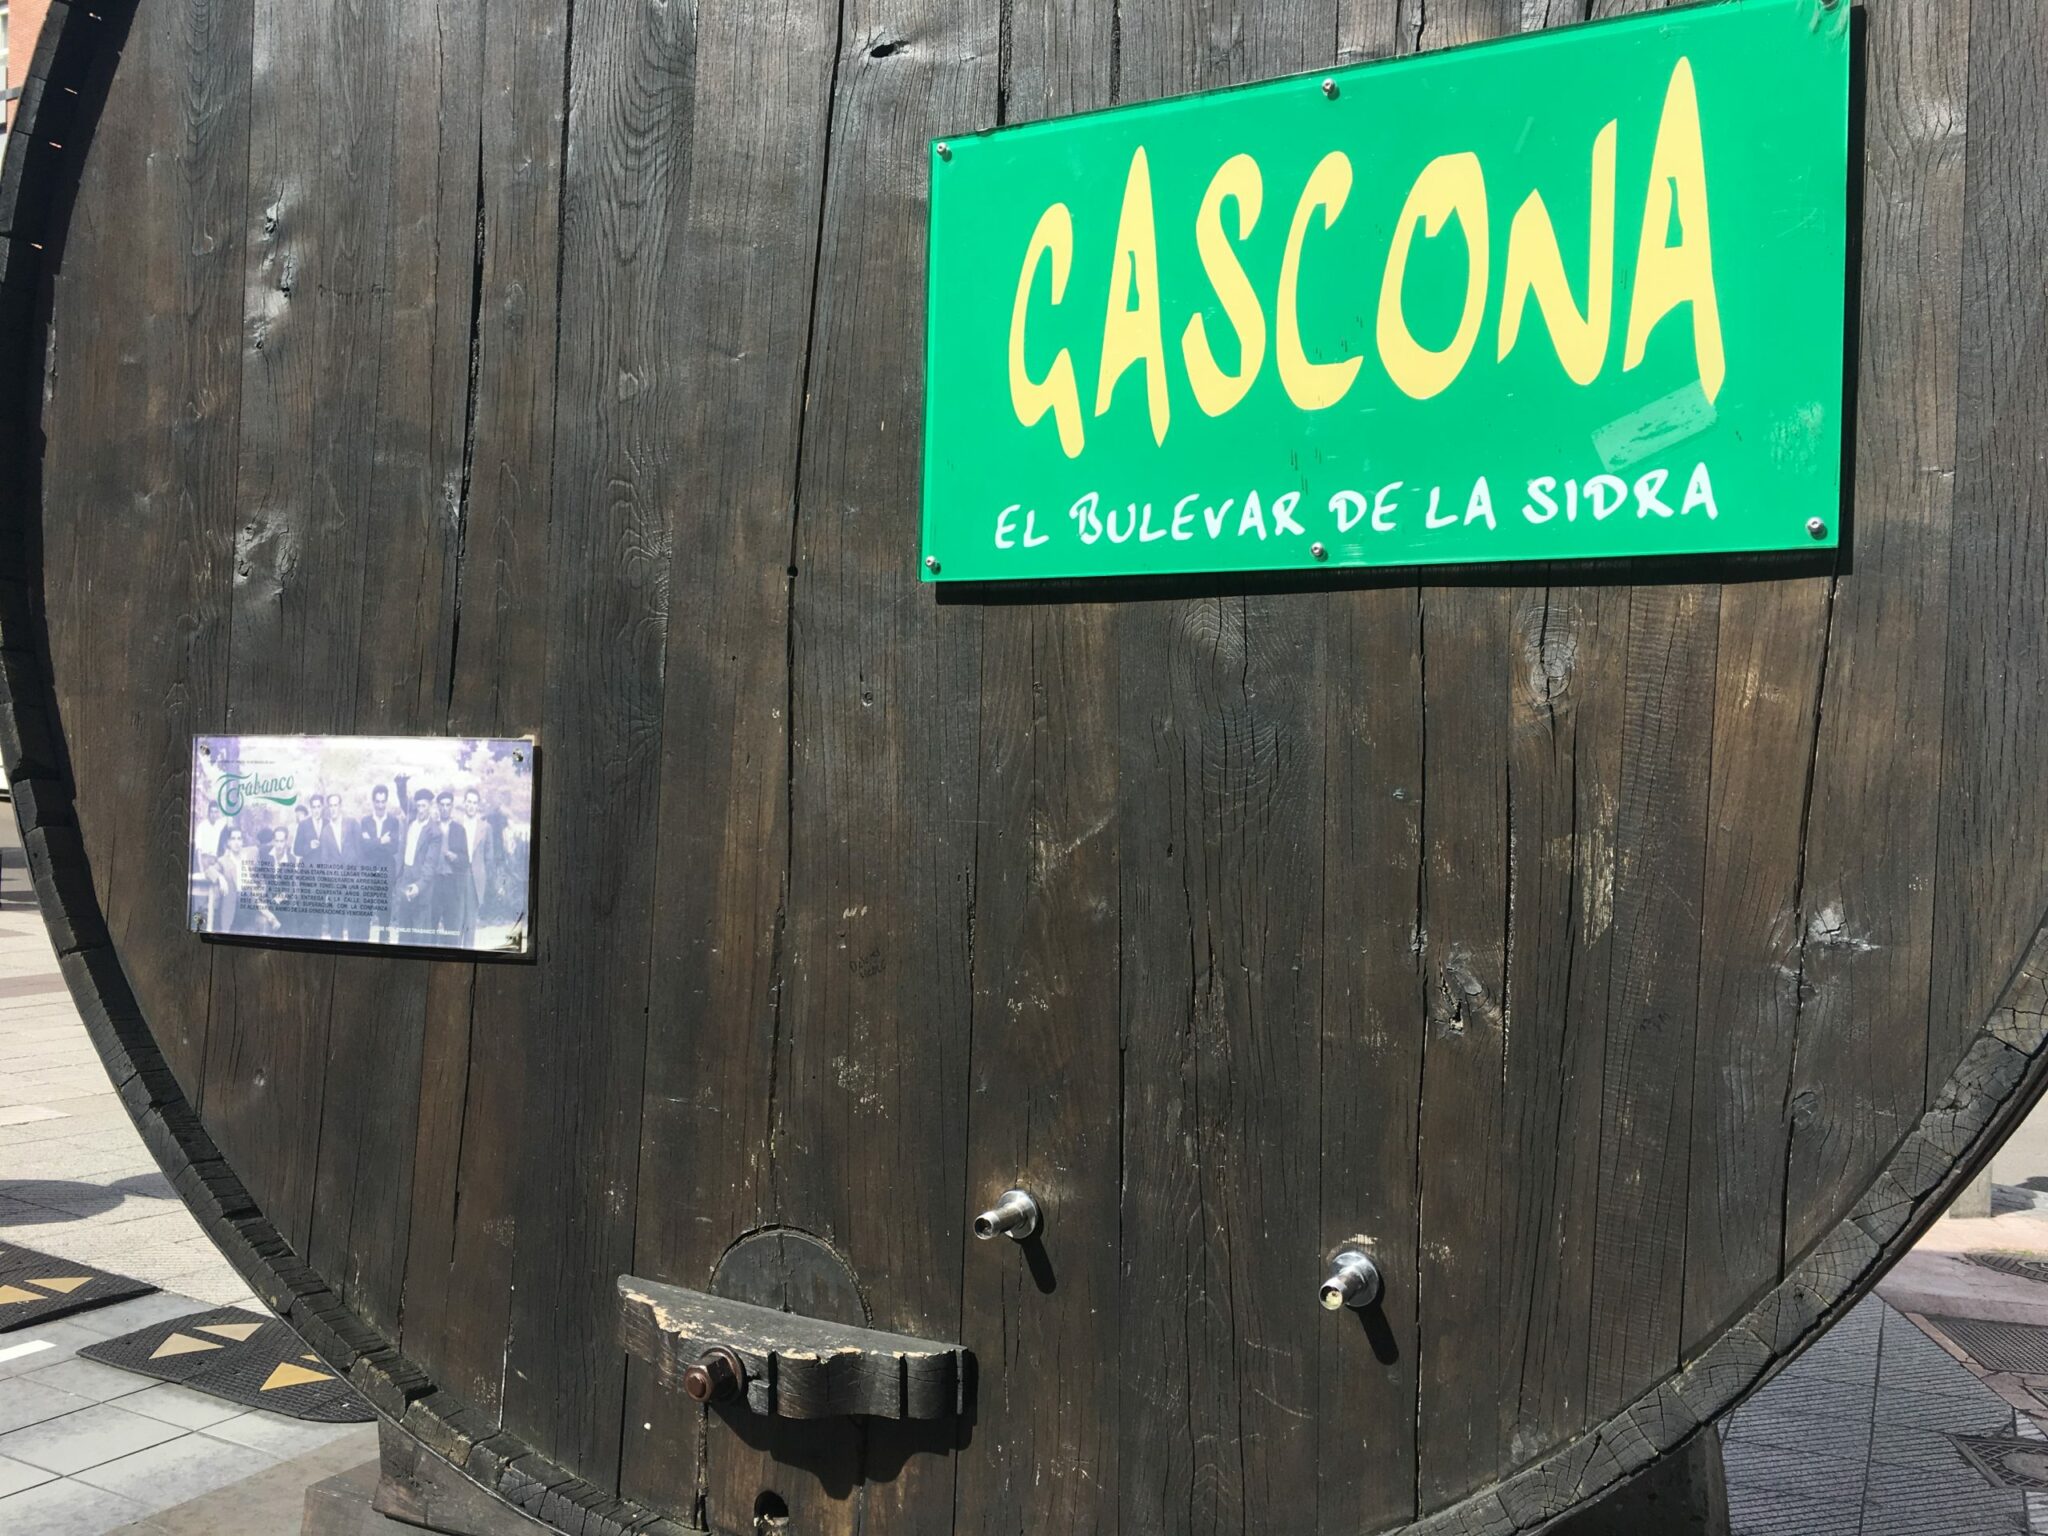 Pipa o Cuba en la Gascona